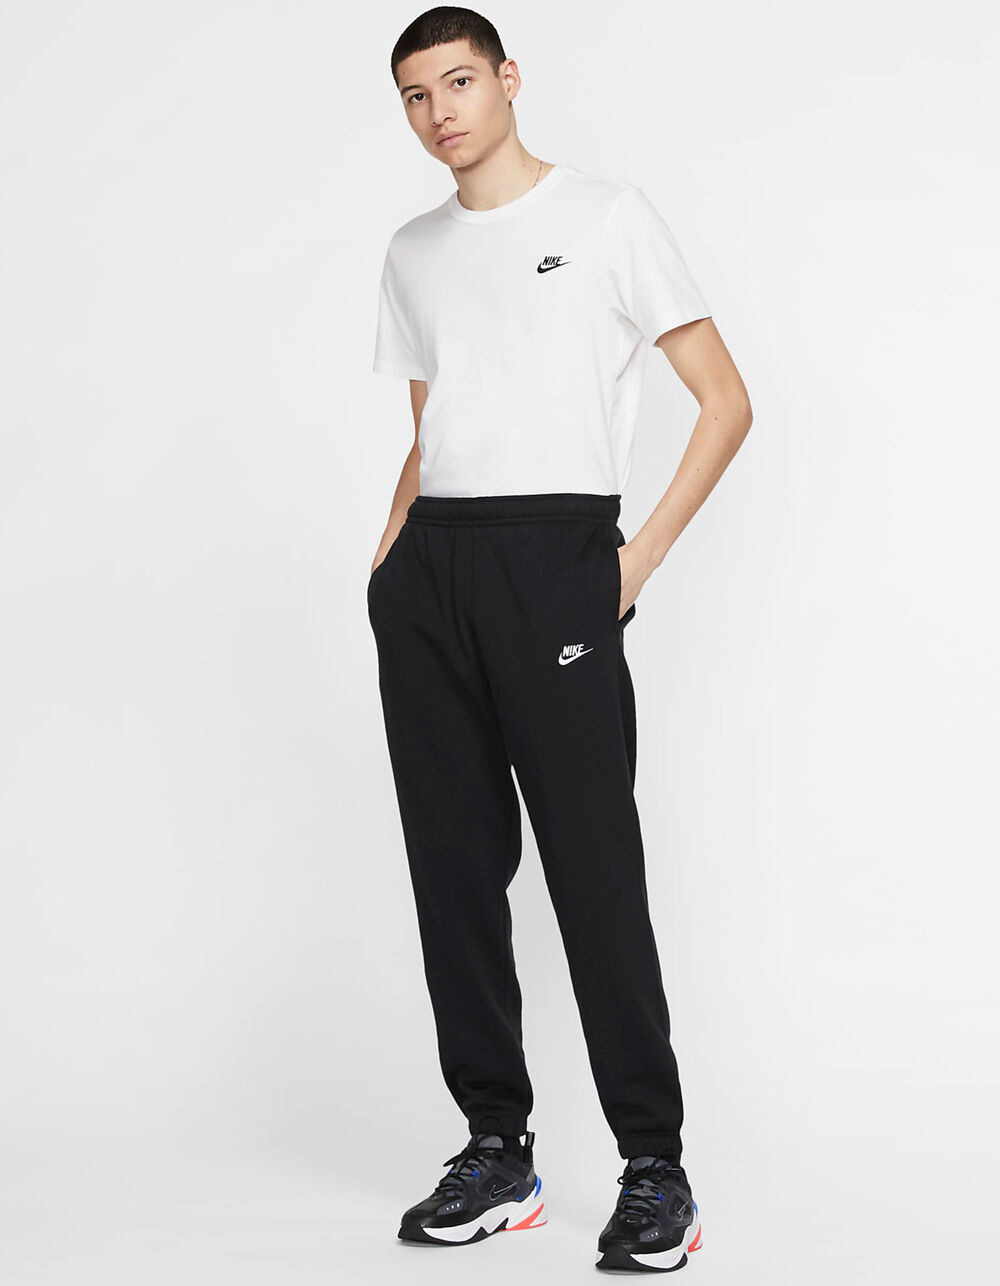 Nike Sportswear Club Fleece Jogger Pants - Black/White, Size M for